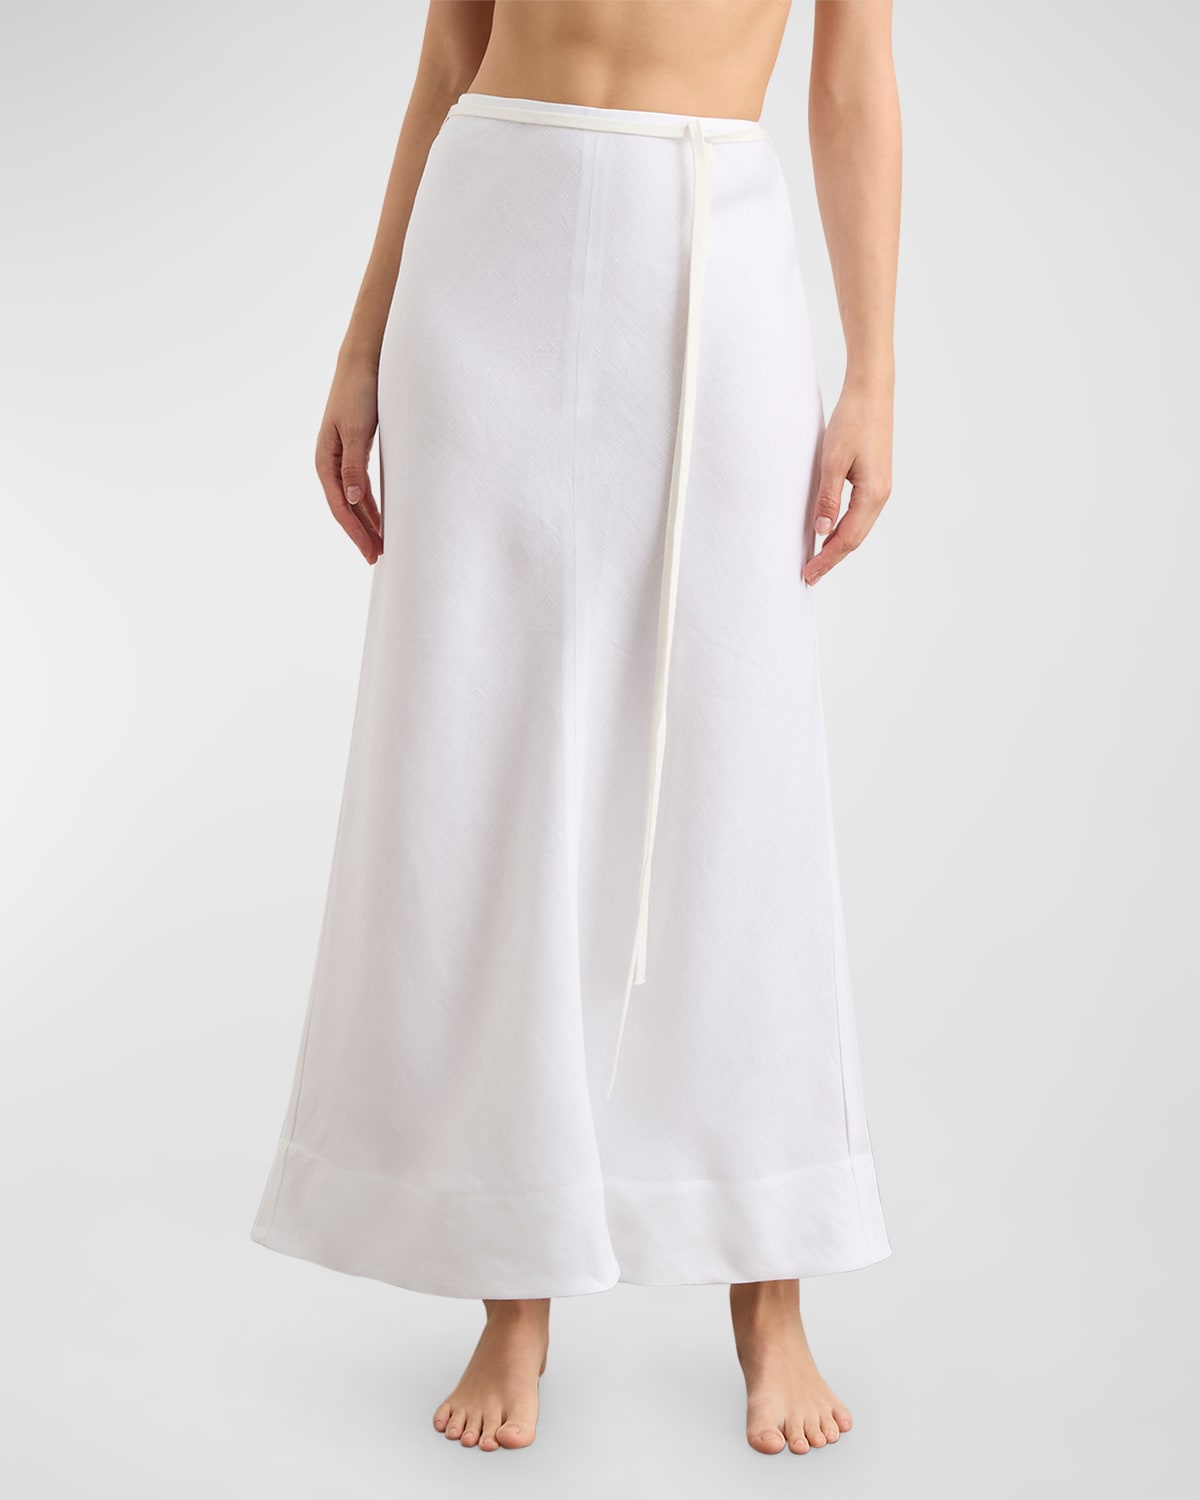 Messina Organic Linen Maxi Skirt